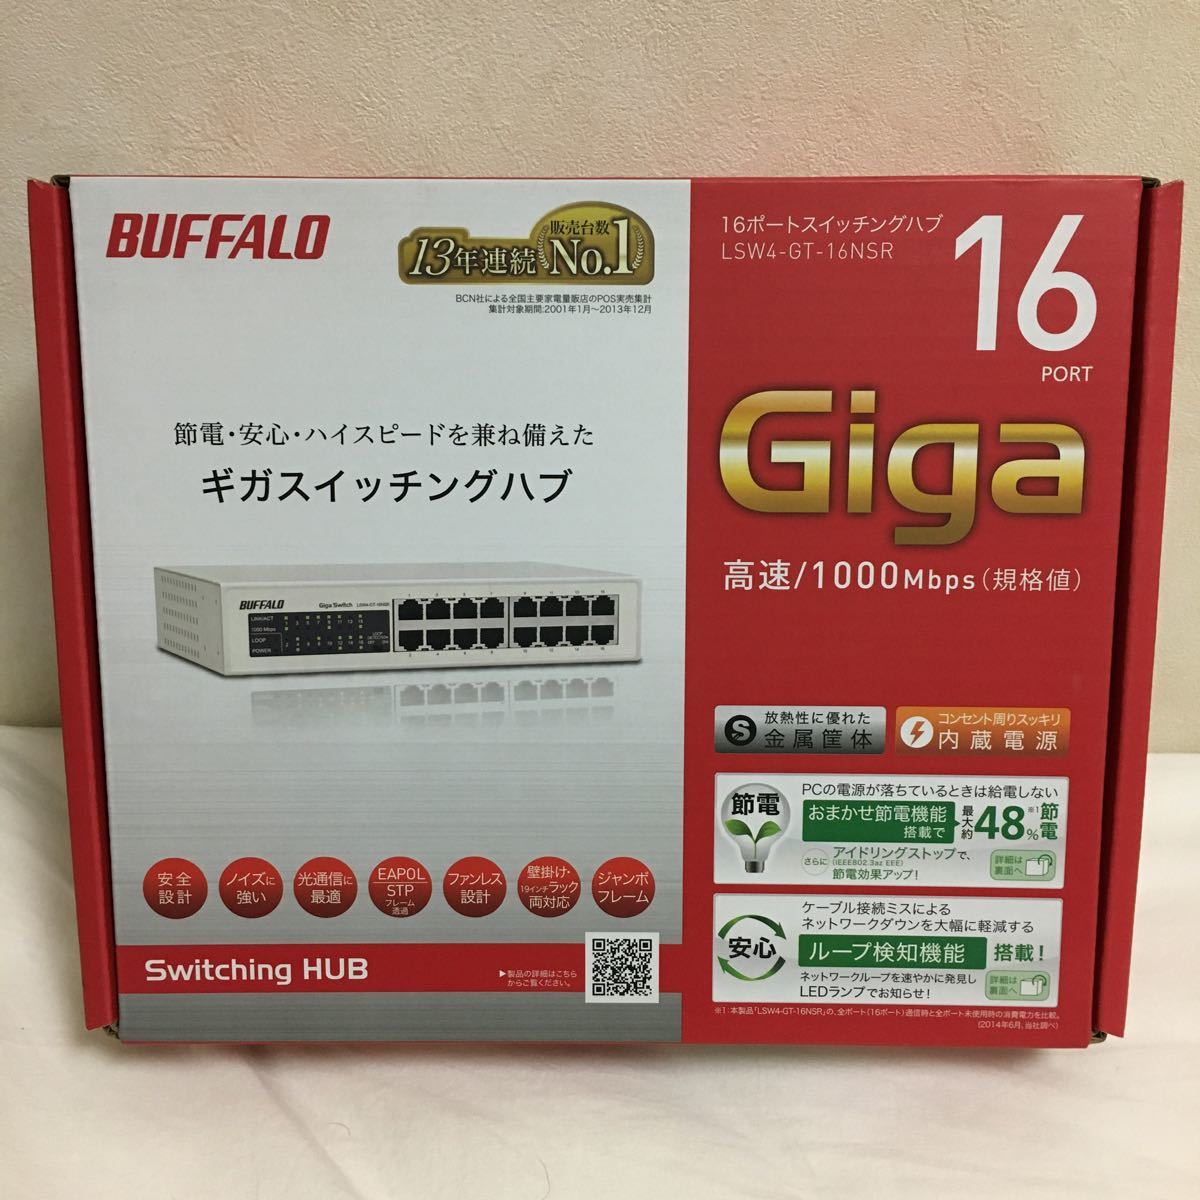 BUFFALO Giga対応 金属筺体 電源内蔵 16ポート ホワイト スイッチングハブ 日本メーカー LSW4-GT-16NSR